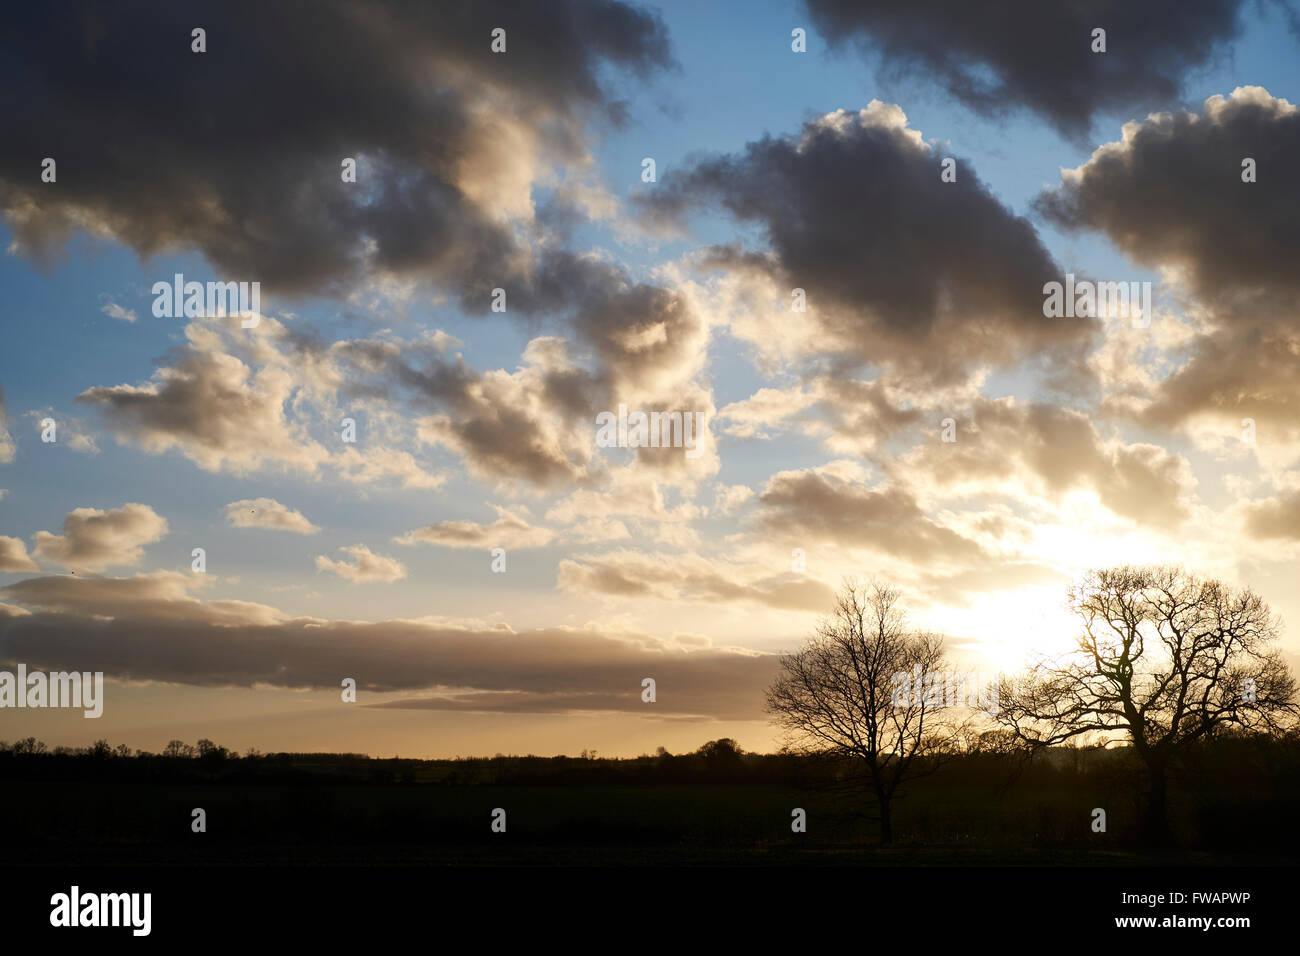 Bäume gegen Sonnenuntergang Himmel mit Schönwetter Wolken gefüllt. Bedfordshire, UK. Stockfoto